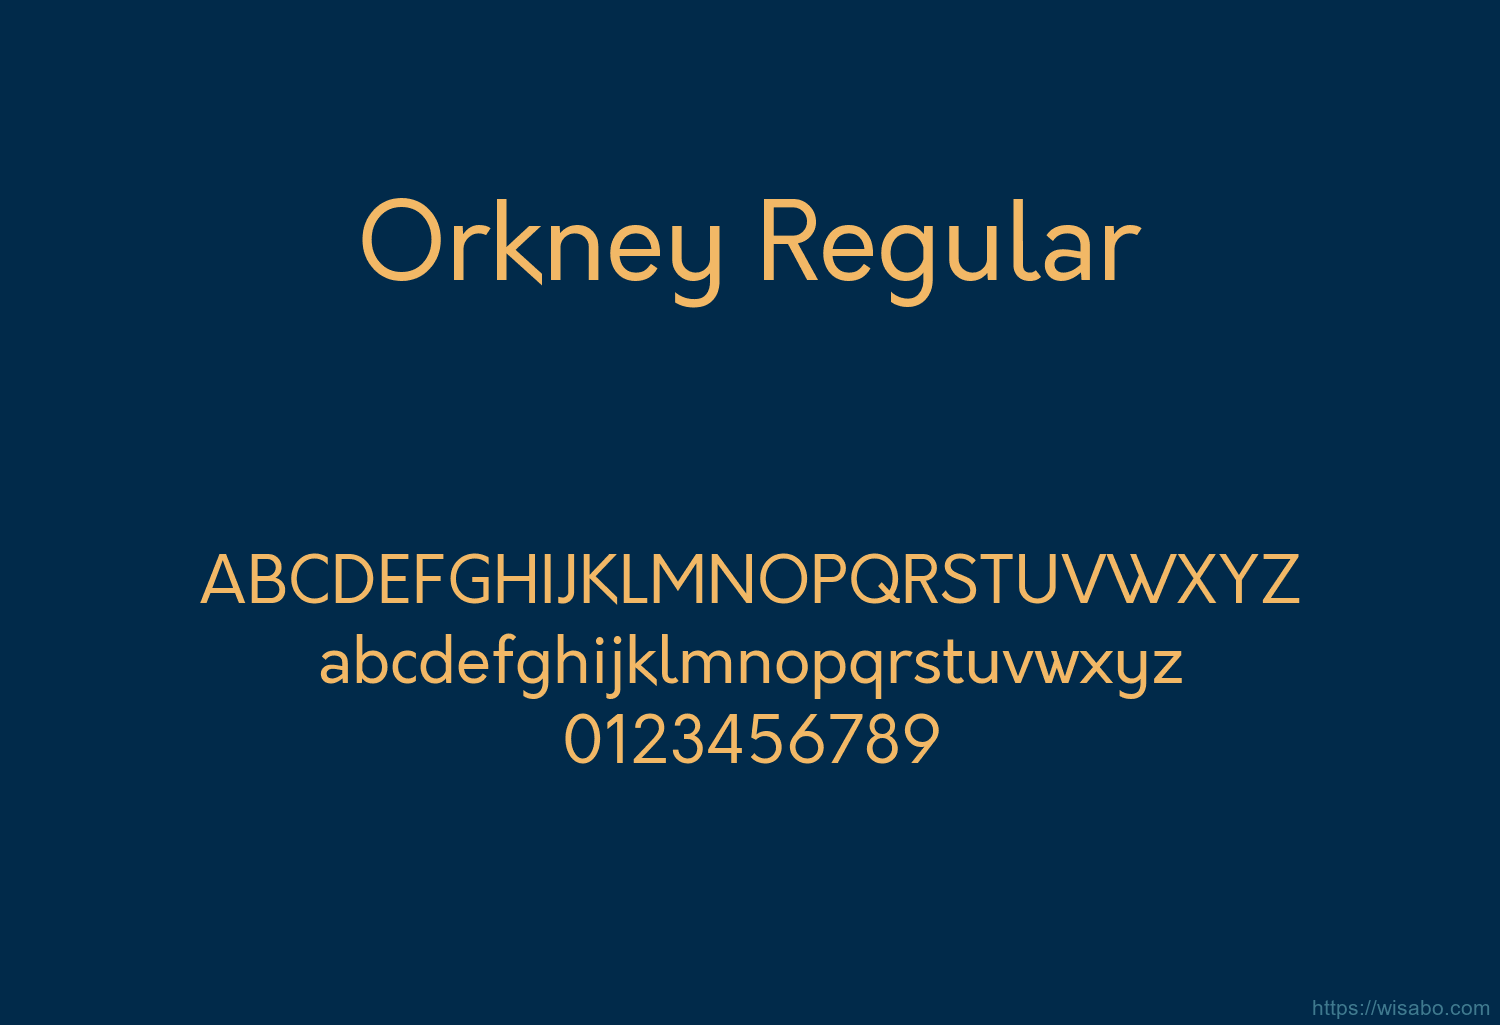 Orkney Regular